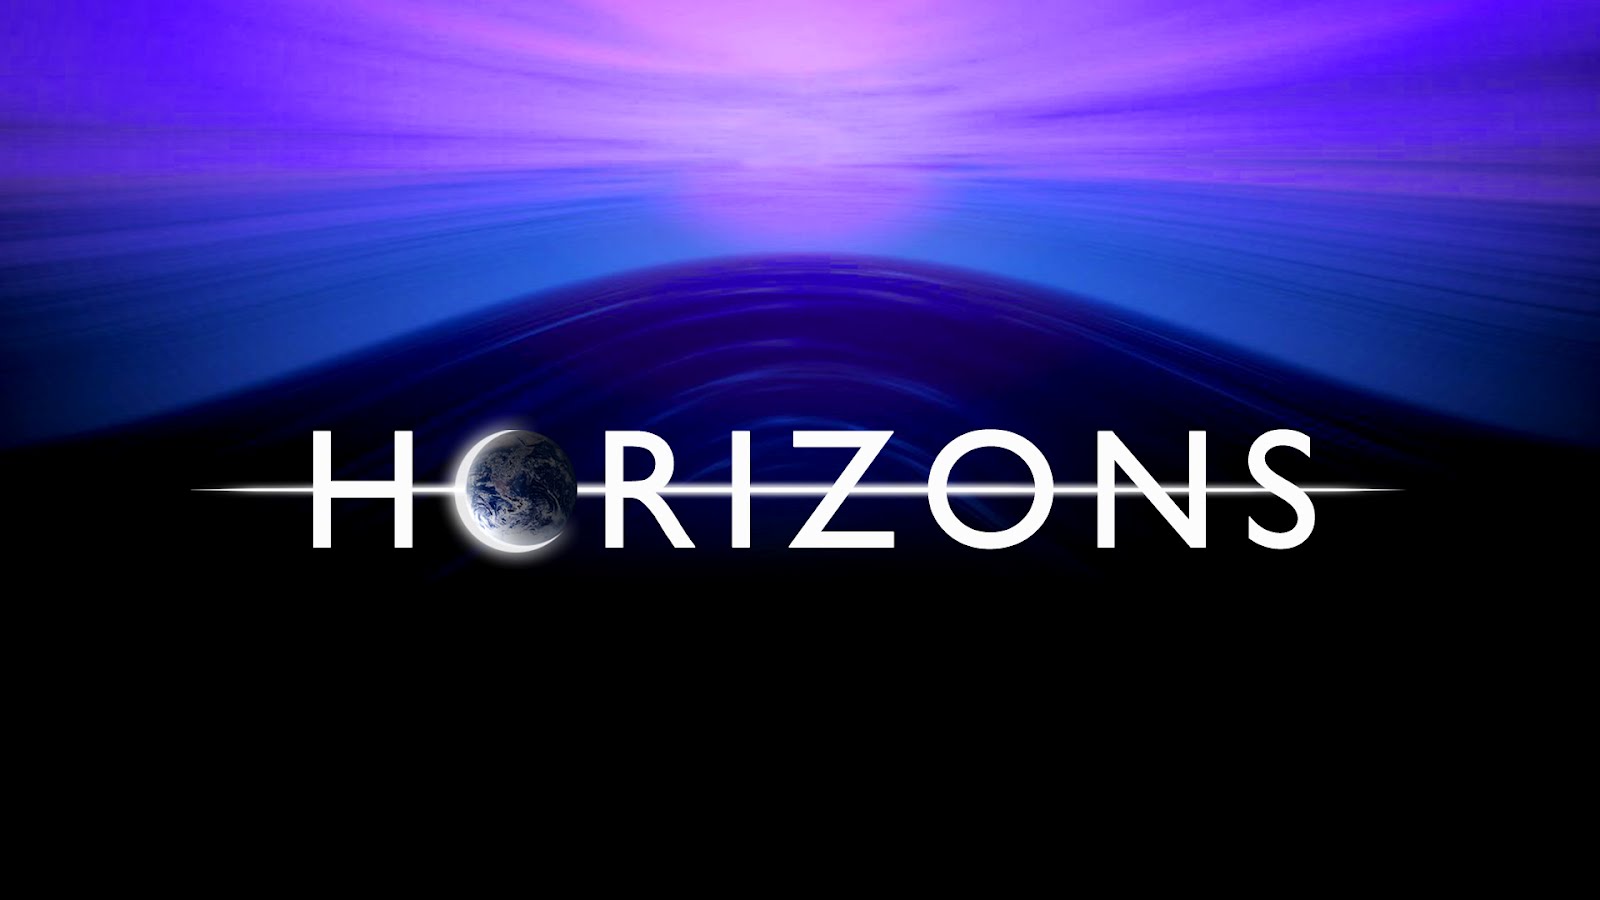 BBC Horizons